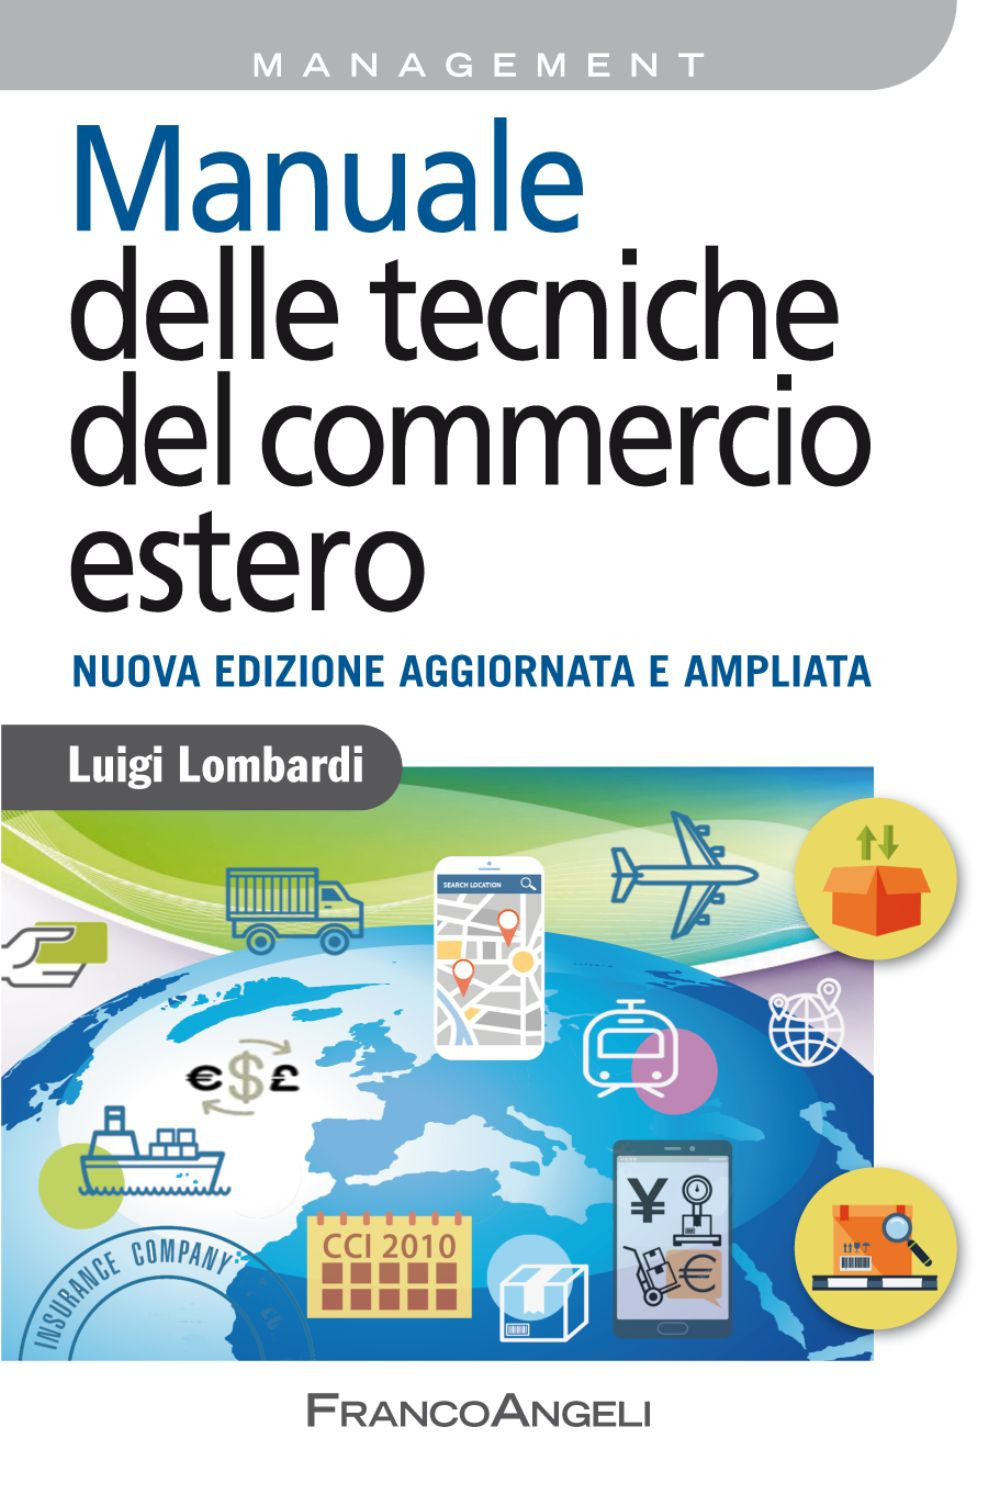 Image of Manuale delle tecniche del commercio estero